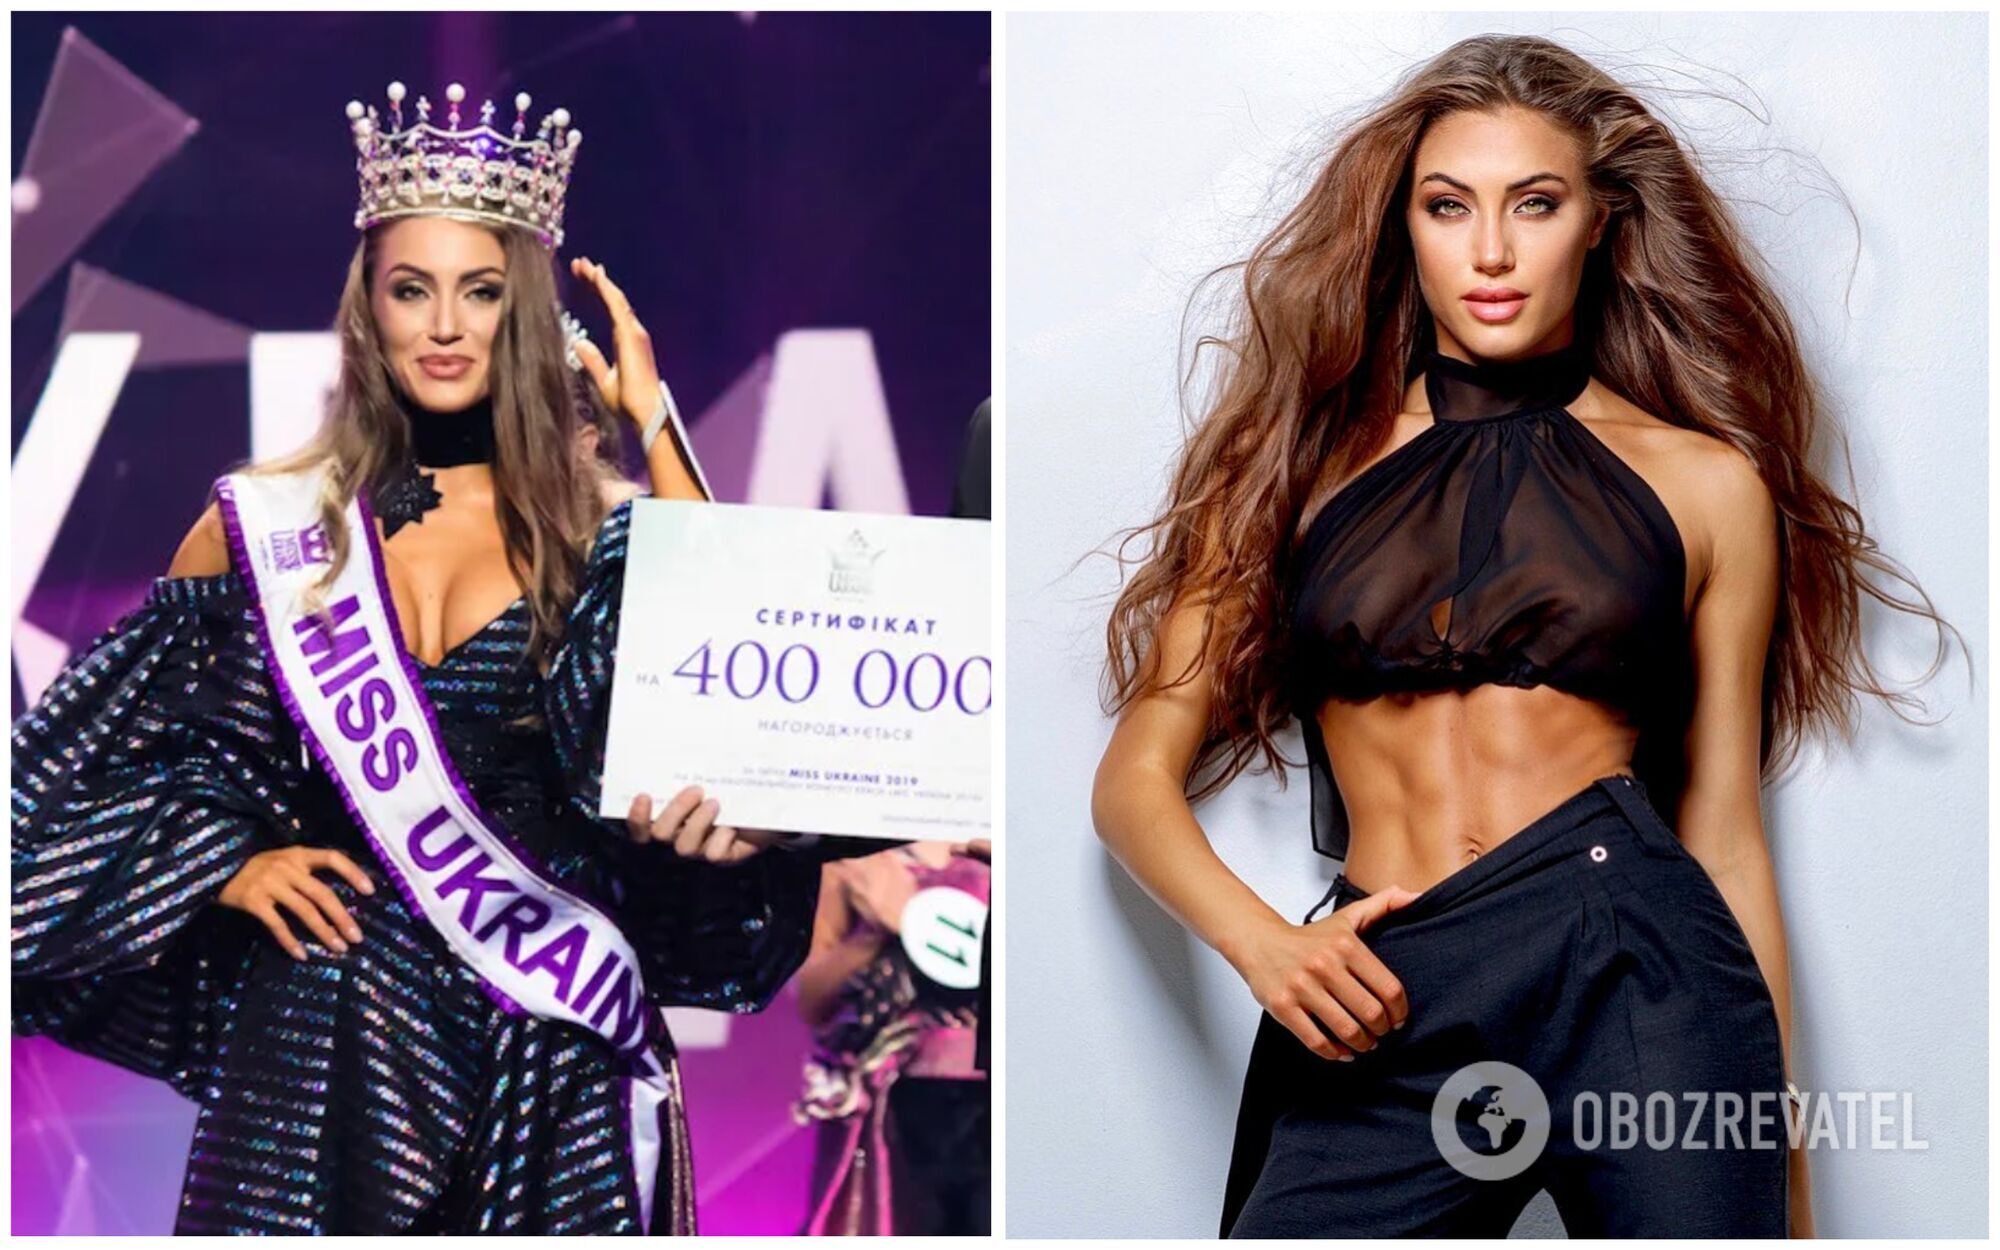 "Міс Україна" 2019 року: Маргарита Паша під час конкурсу і зараз